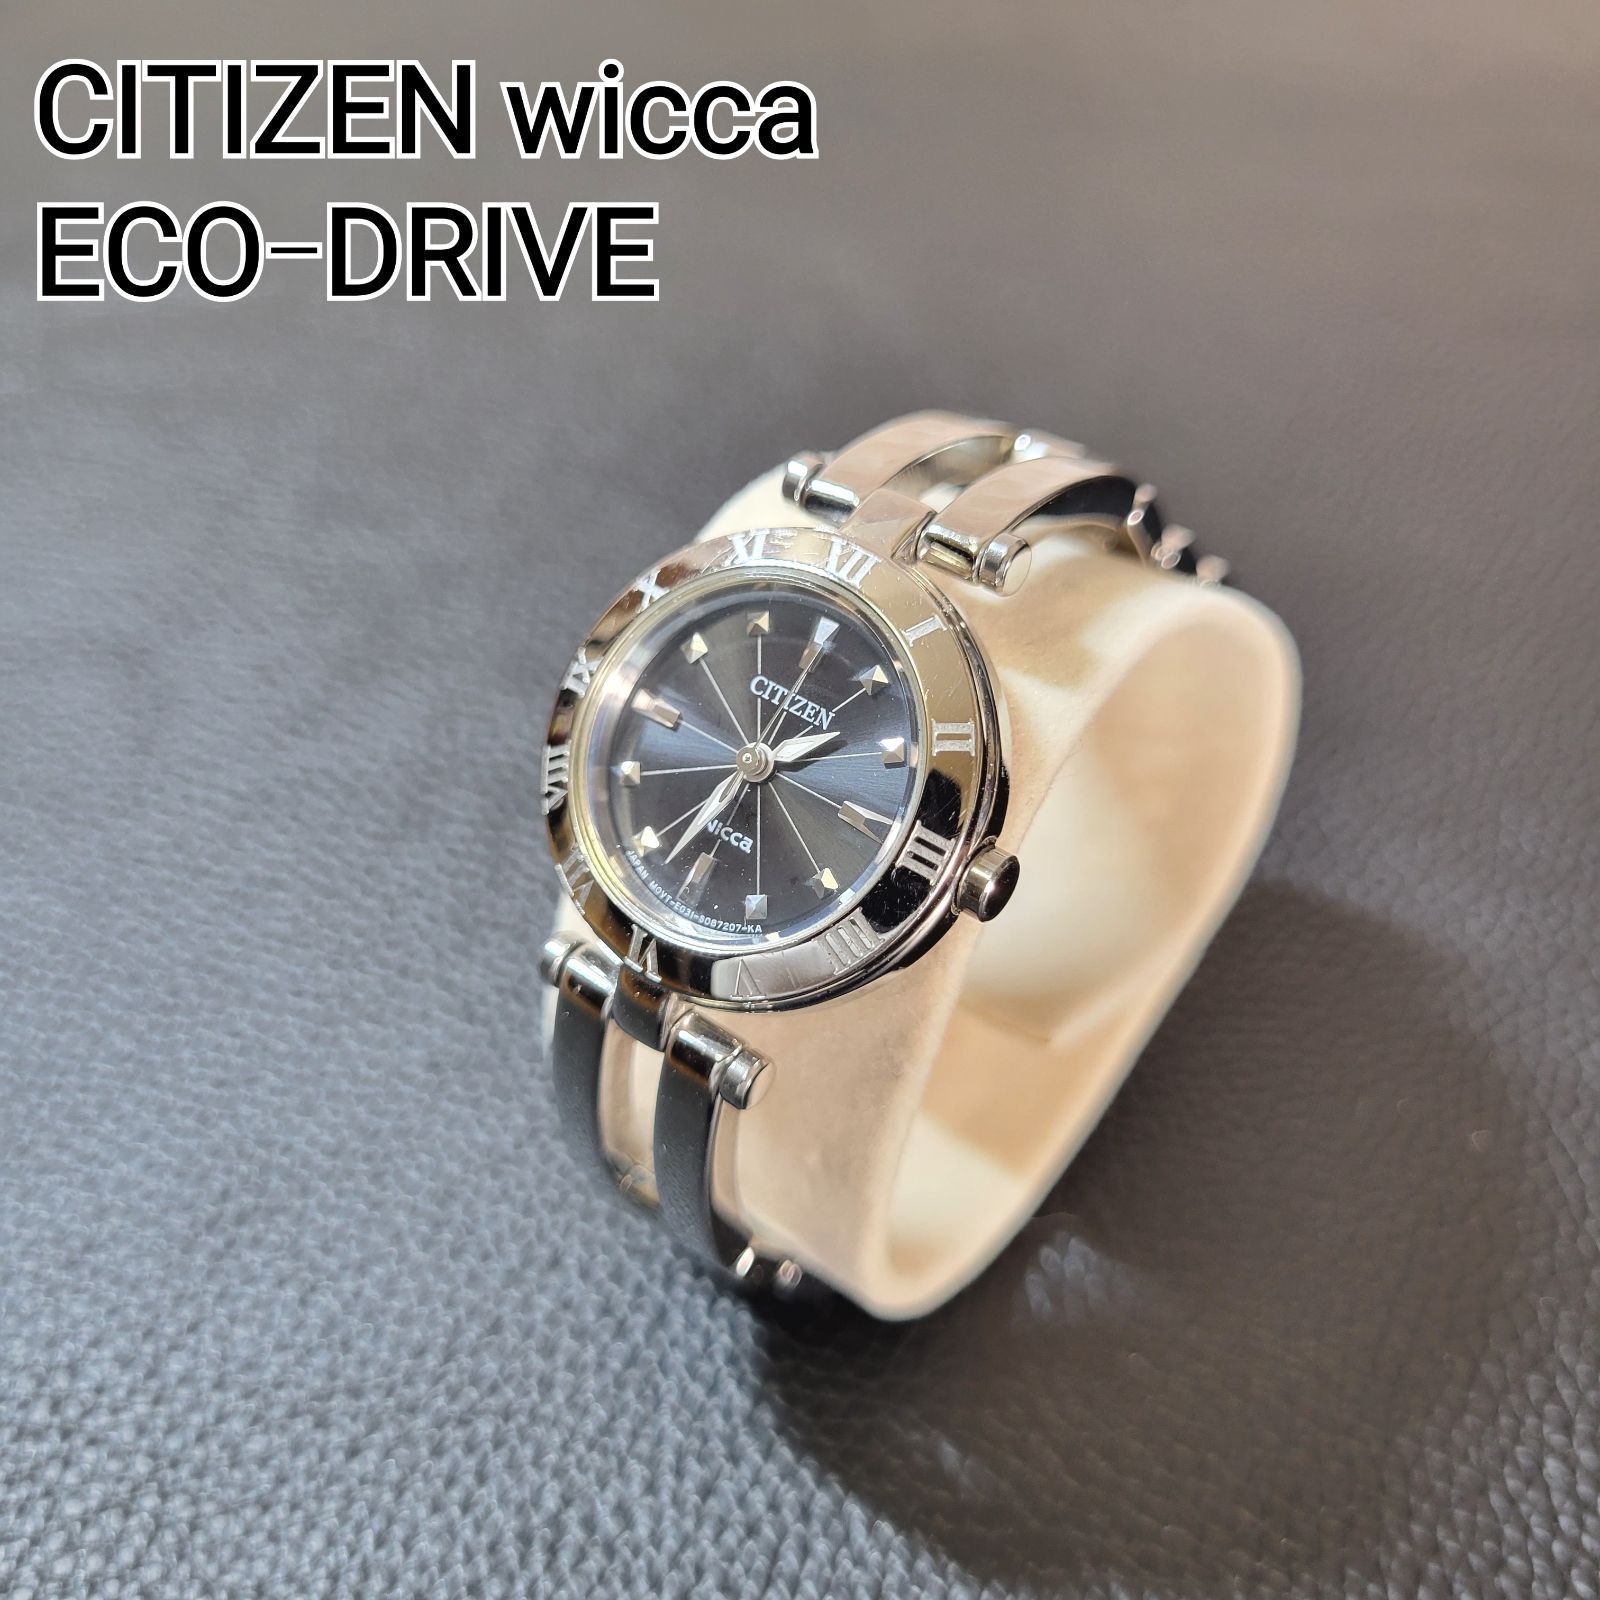 シチズンウィッカ エコ・ドライブ ソーラー時計 NA15-1573C - 時計